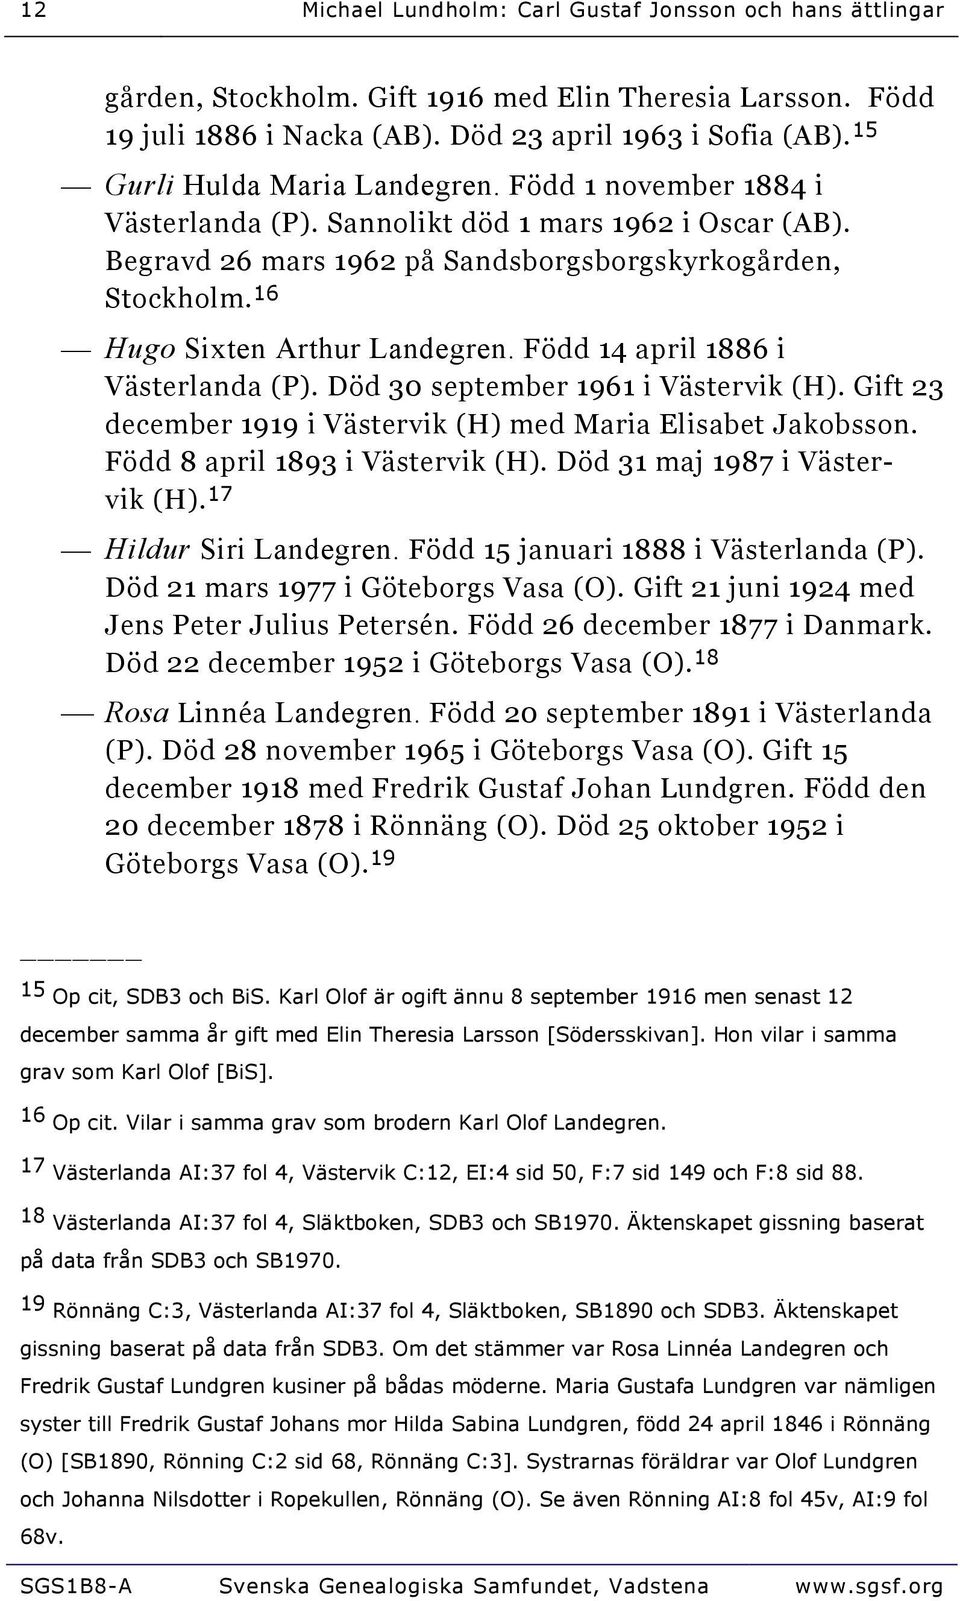 16 Hugo Sixten Arthur Landegren. Född 14 april 1886 i Västerlanda (P). Död 30 september 1961 i Västervik (H). Gift 23 december 1919 i Västervik (H) med Maria Elisabet Jakobsson.